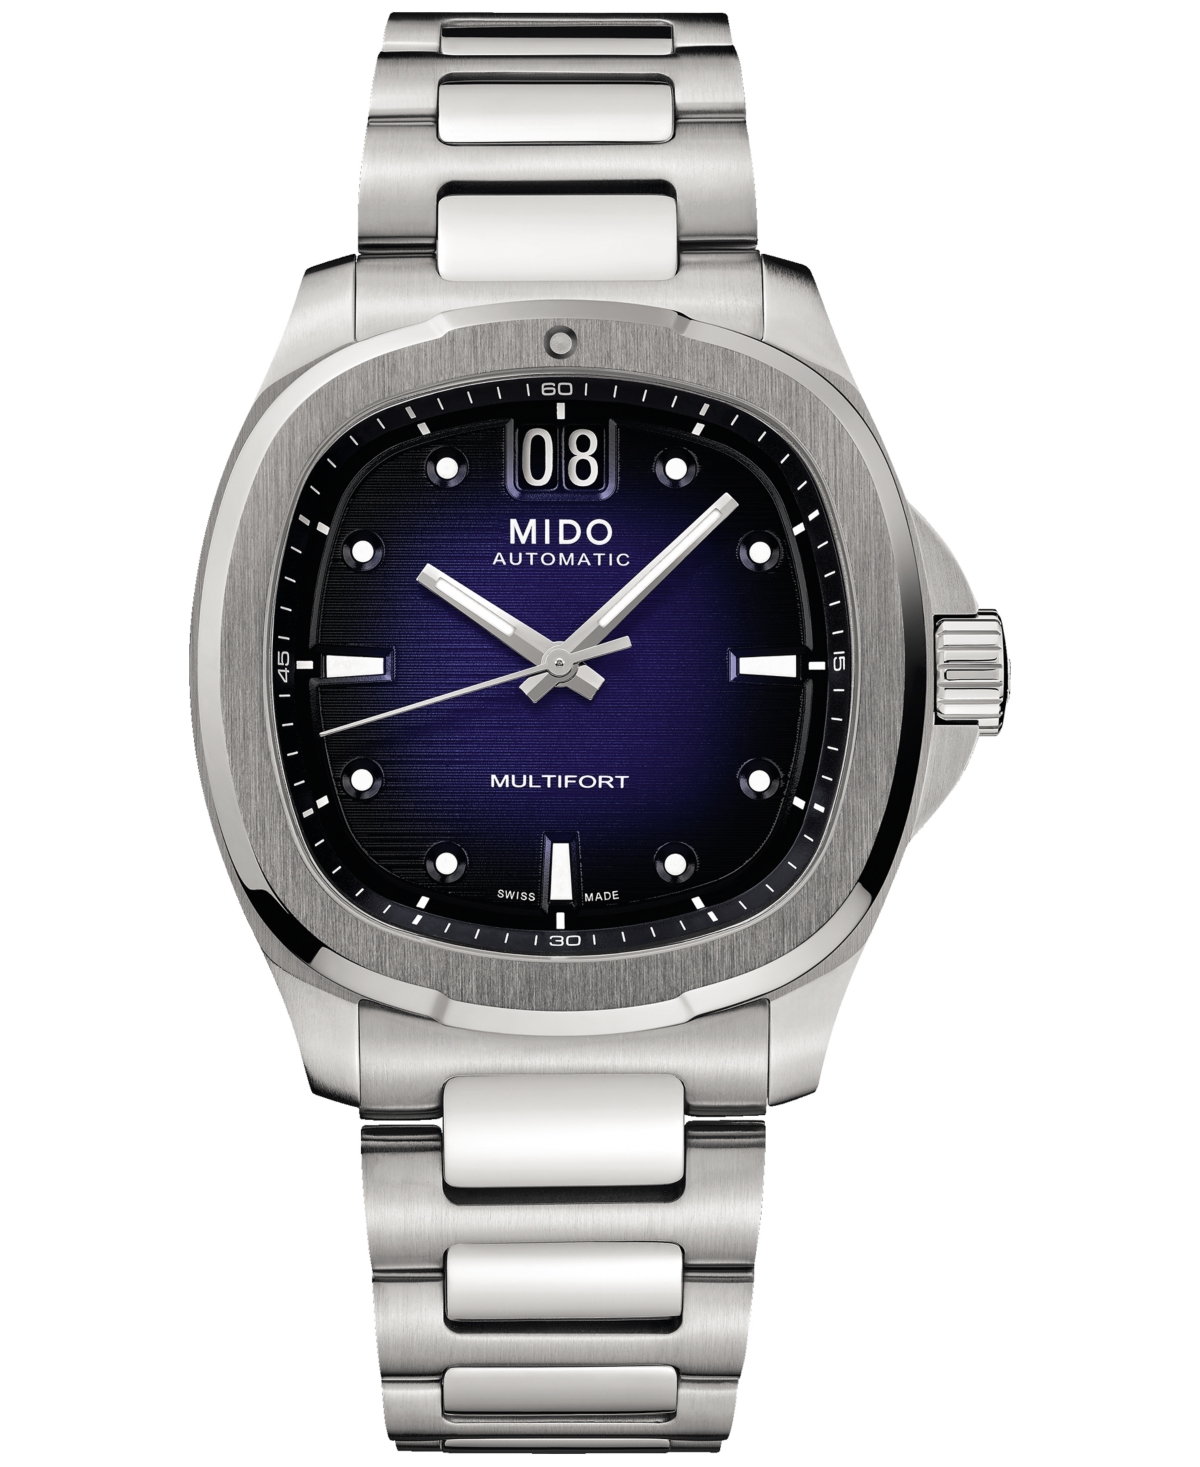 Mido Men's Swiss Automatic Multifort Stainless Steel Bracelet Watch 41mm In Blue